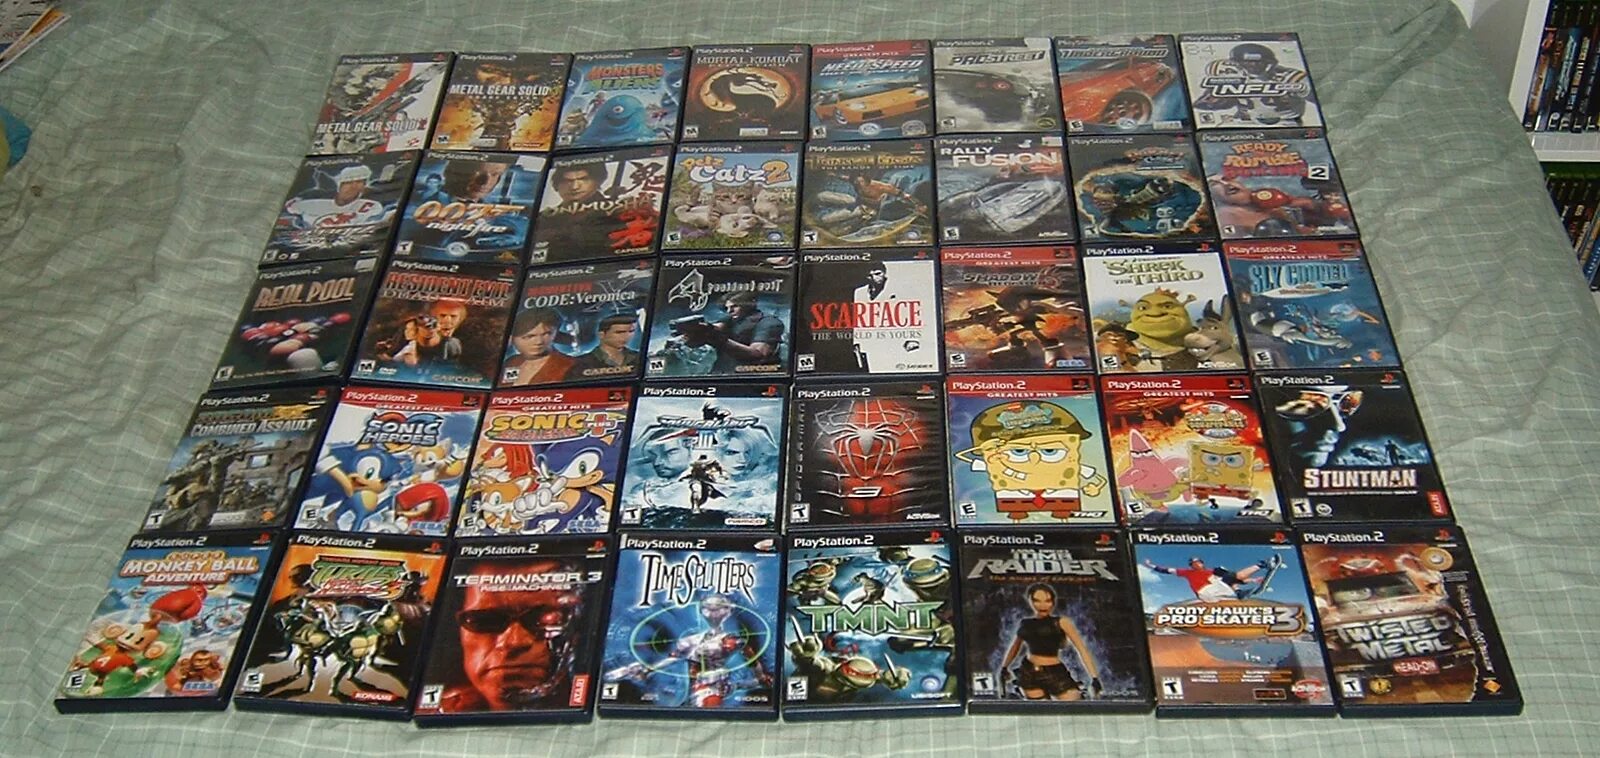 Моя коллекция игр ps2 PSP. PLAYSTATION 2 игры. PLAYSTATION 2 collection. Моя коллекция игр на PLAYSTATION 2.